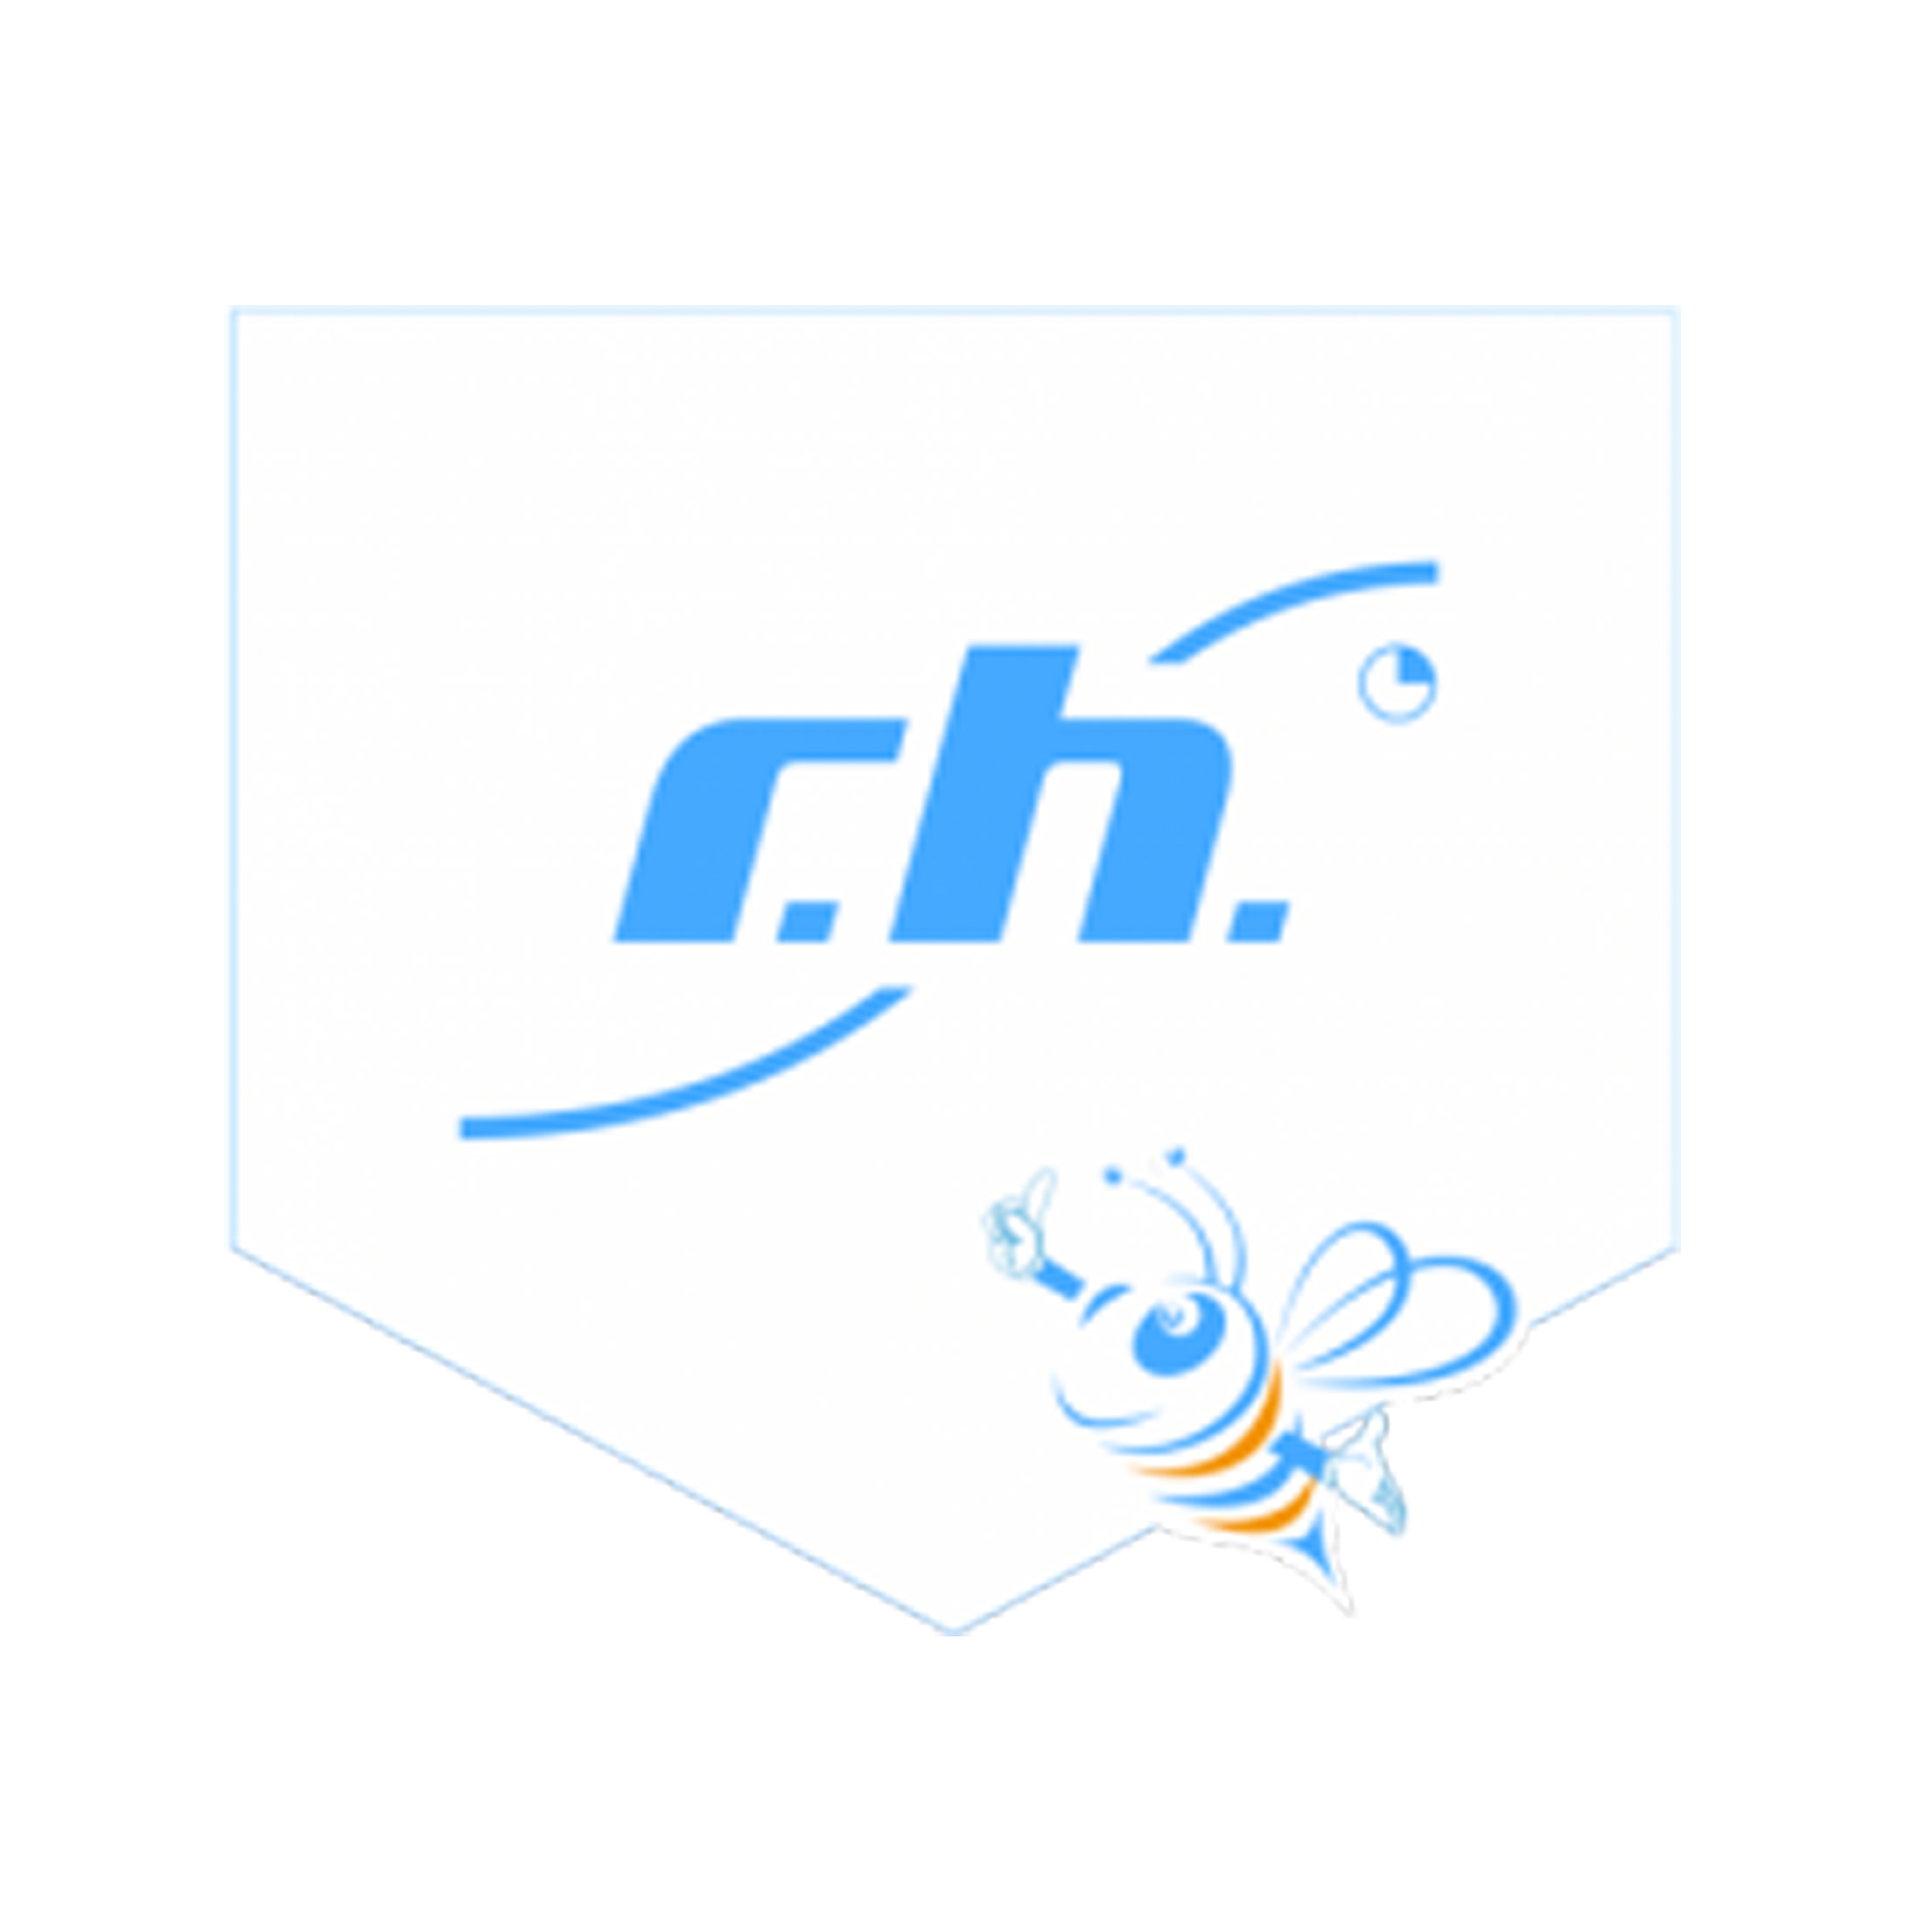 Logo von R.H. Personalmanagement GmbH